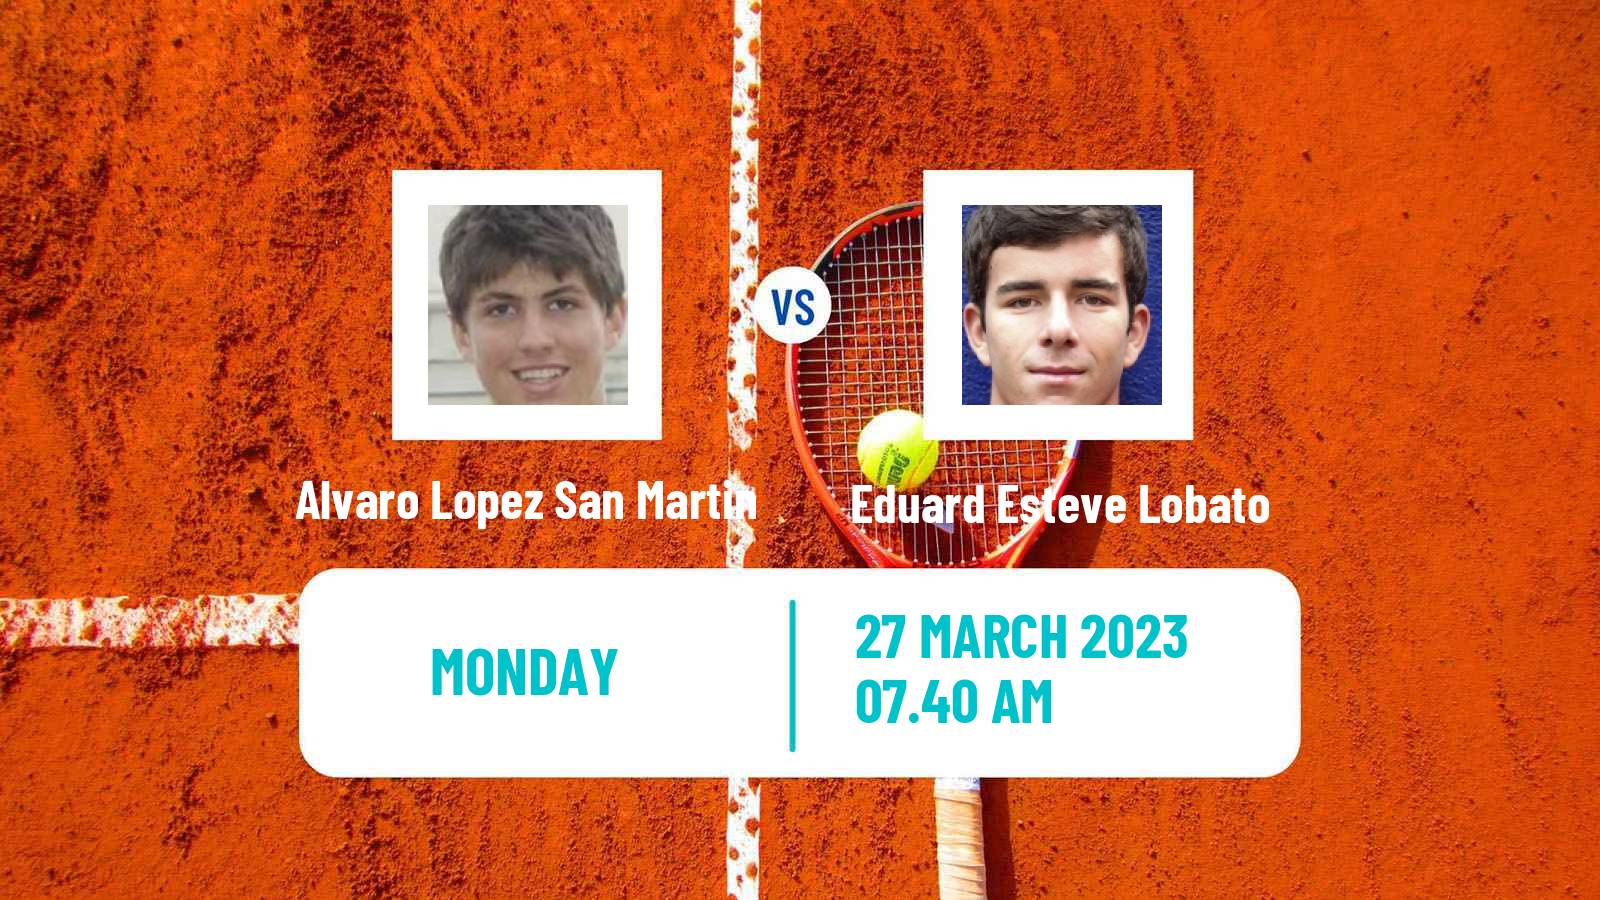 Tennis ATP Challenger Alvaro Lopez San Martin - Eduard Esteve Lobato